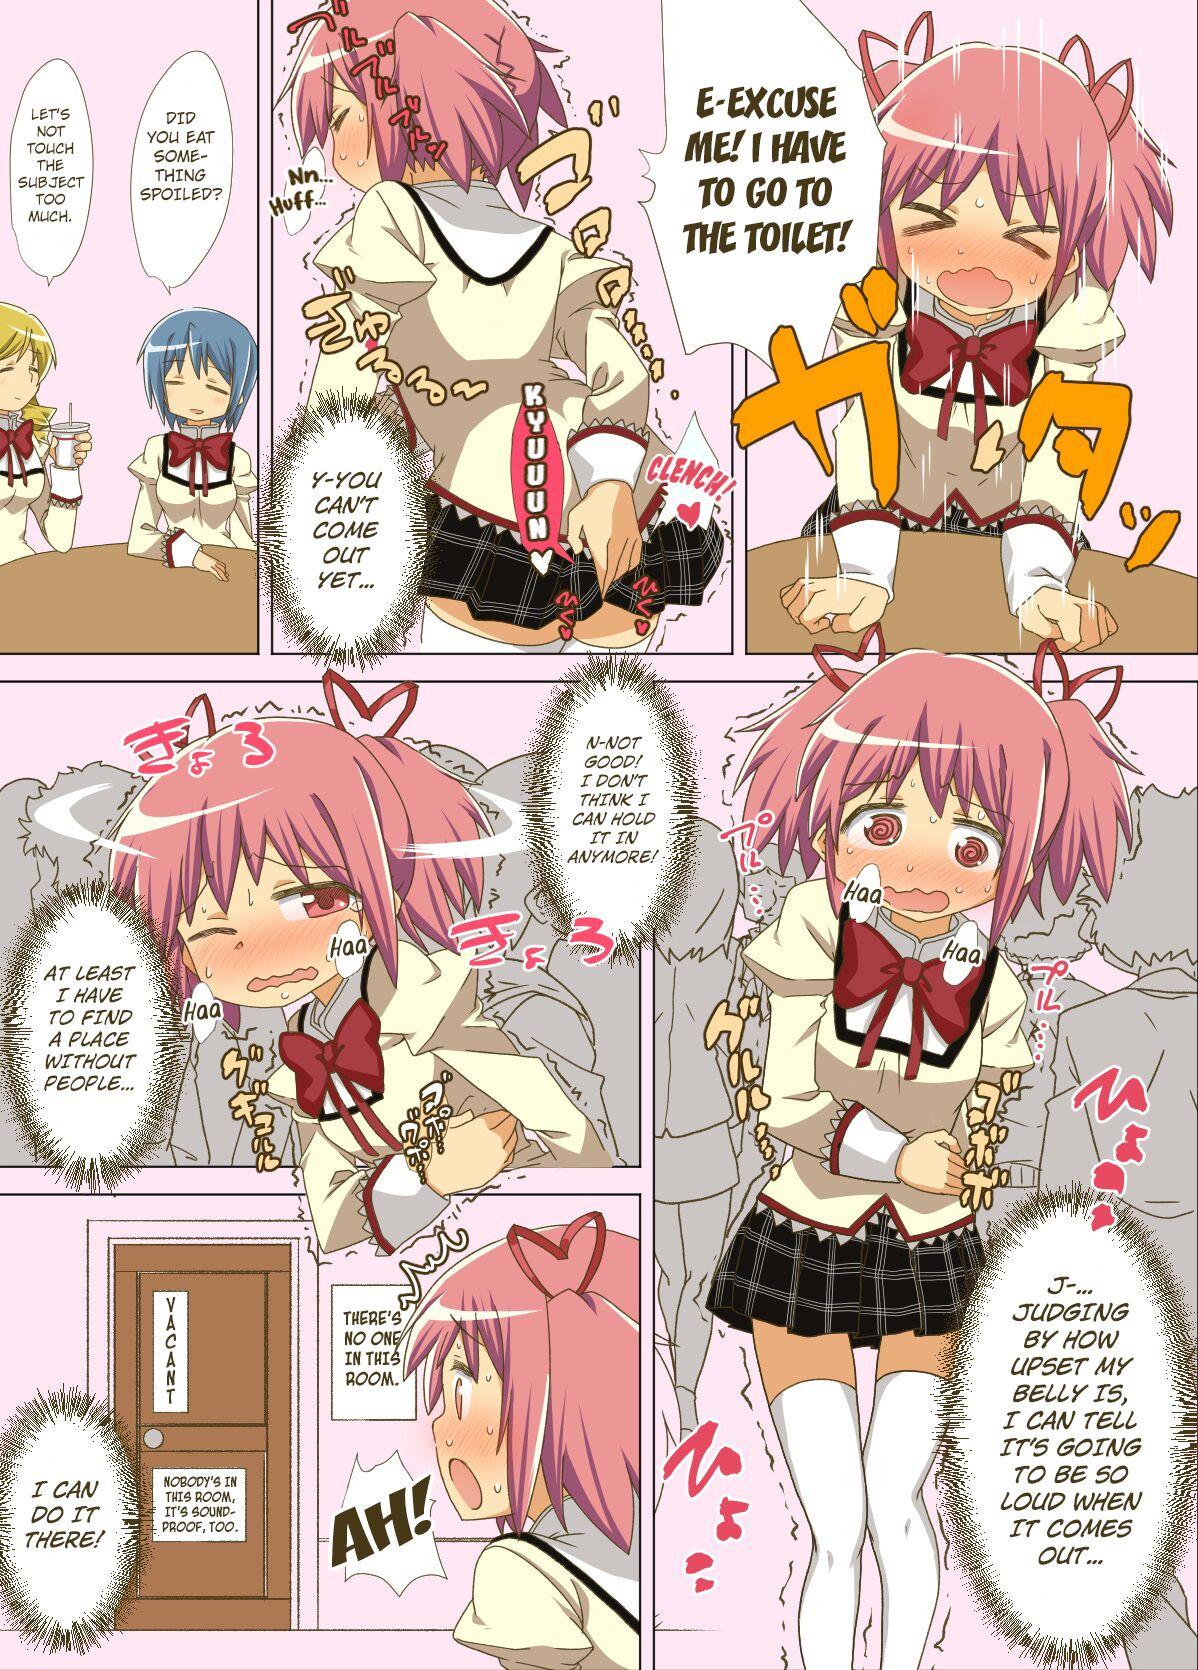 Massive Madohomu Gas Expulsion Manga - Puella magi madoka magica Lesbian - Page 3